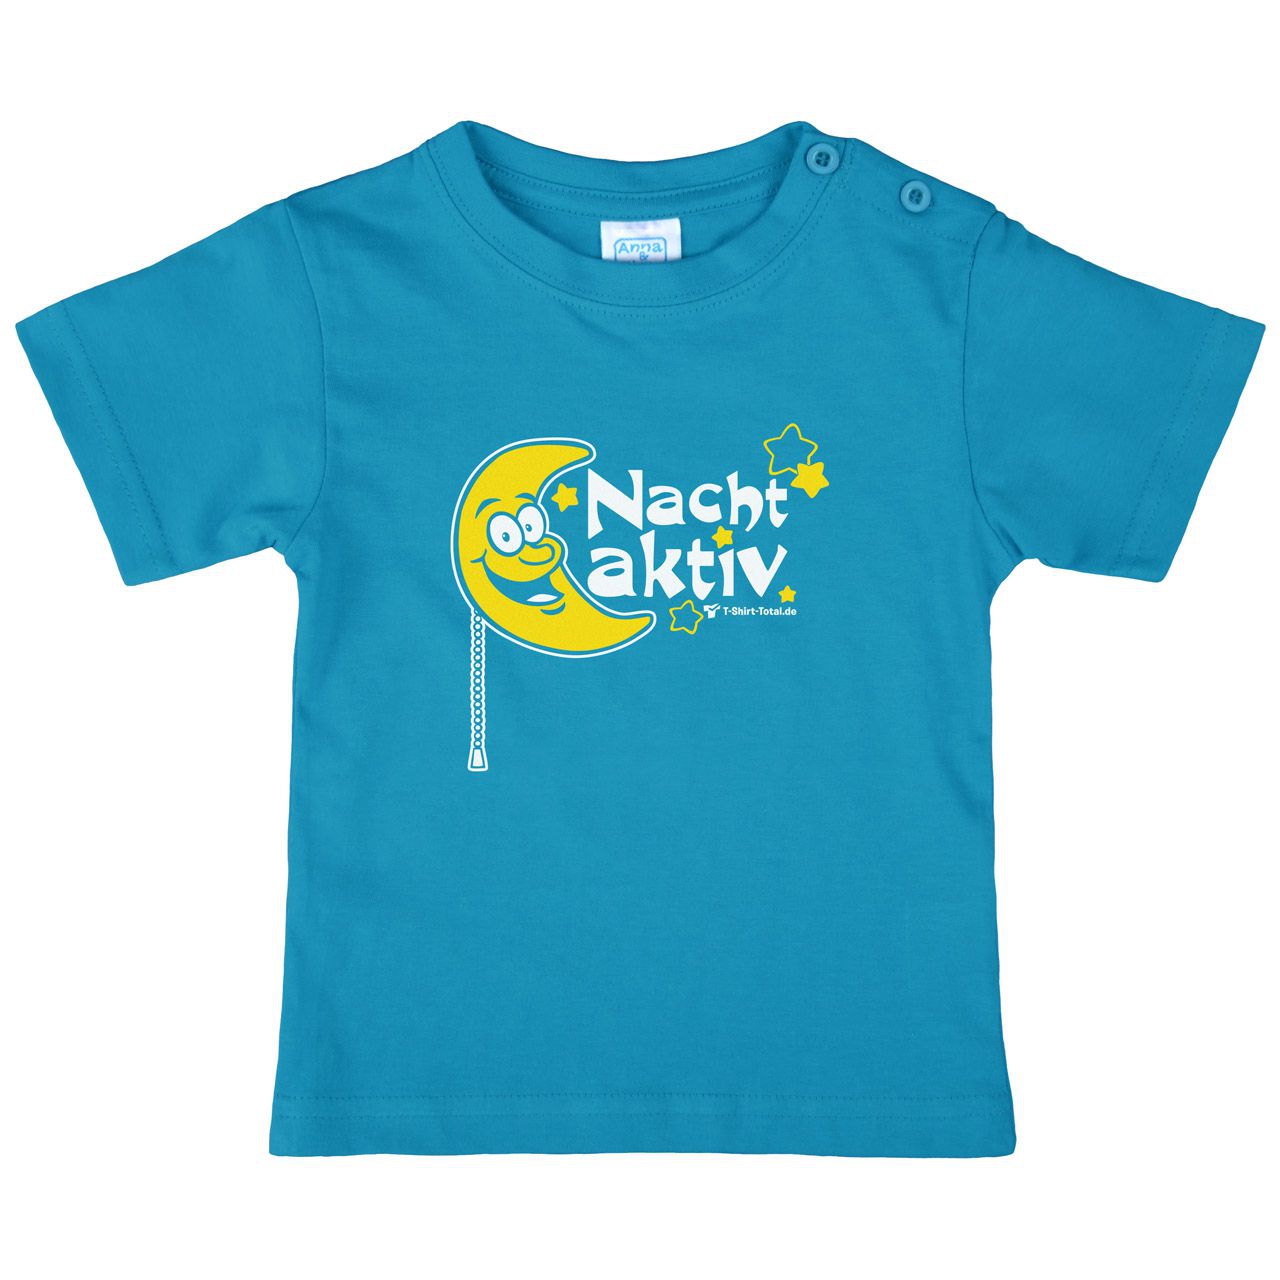 Nachtaktiv Mond Kinder T-Shirt türkis 80 / 86